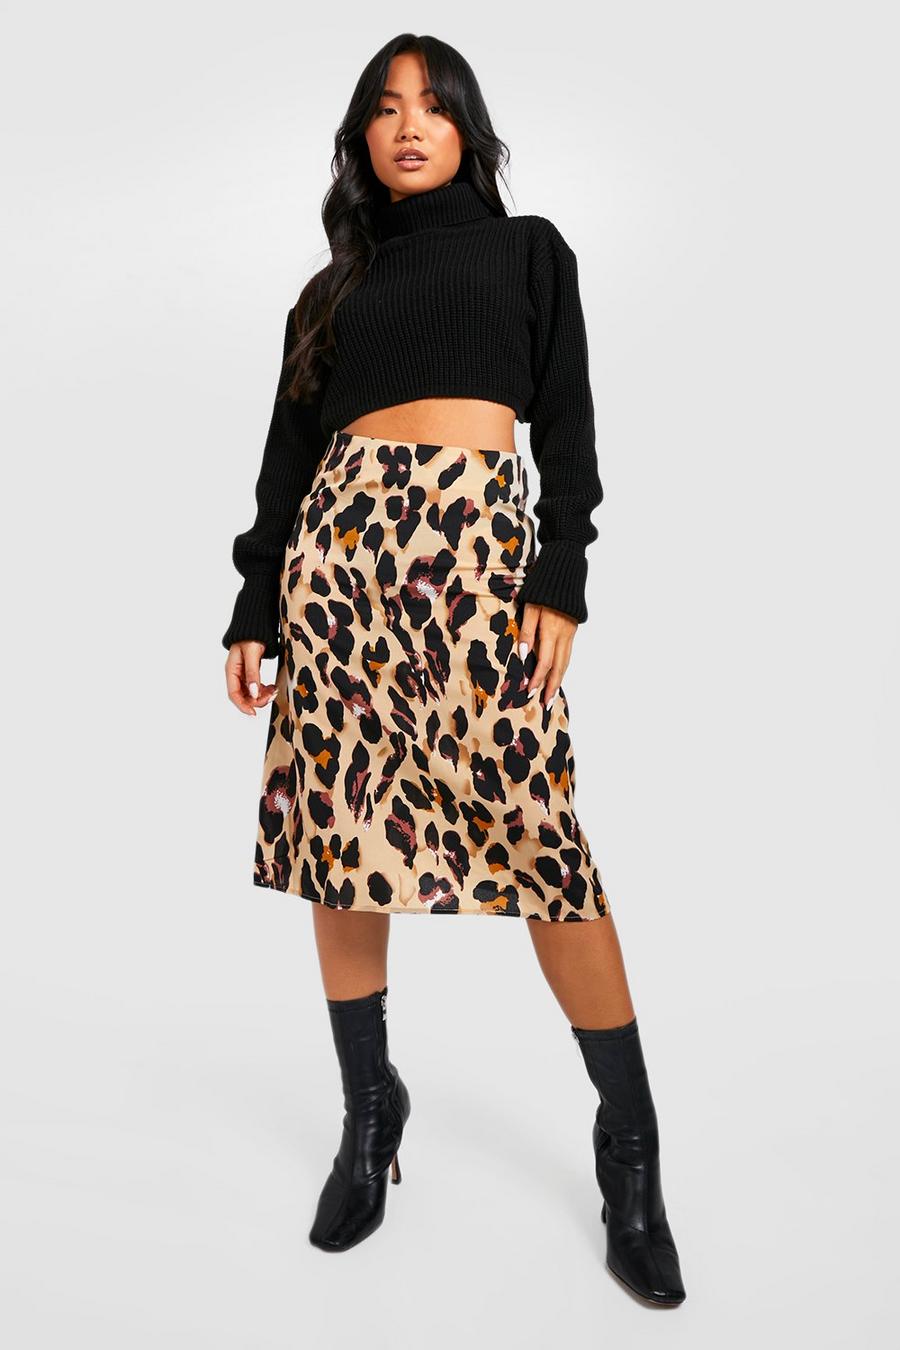 Petite Leopard Print Bias Cut Midi Skirt